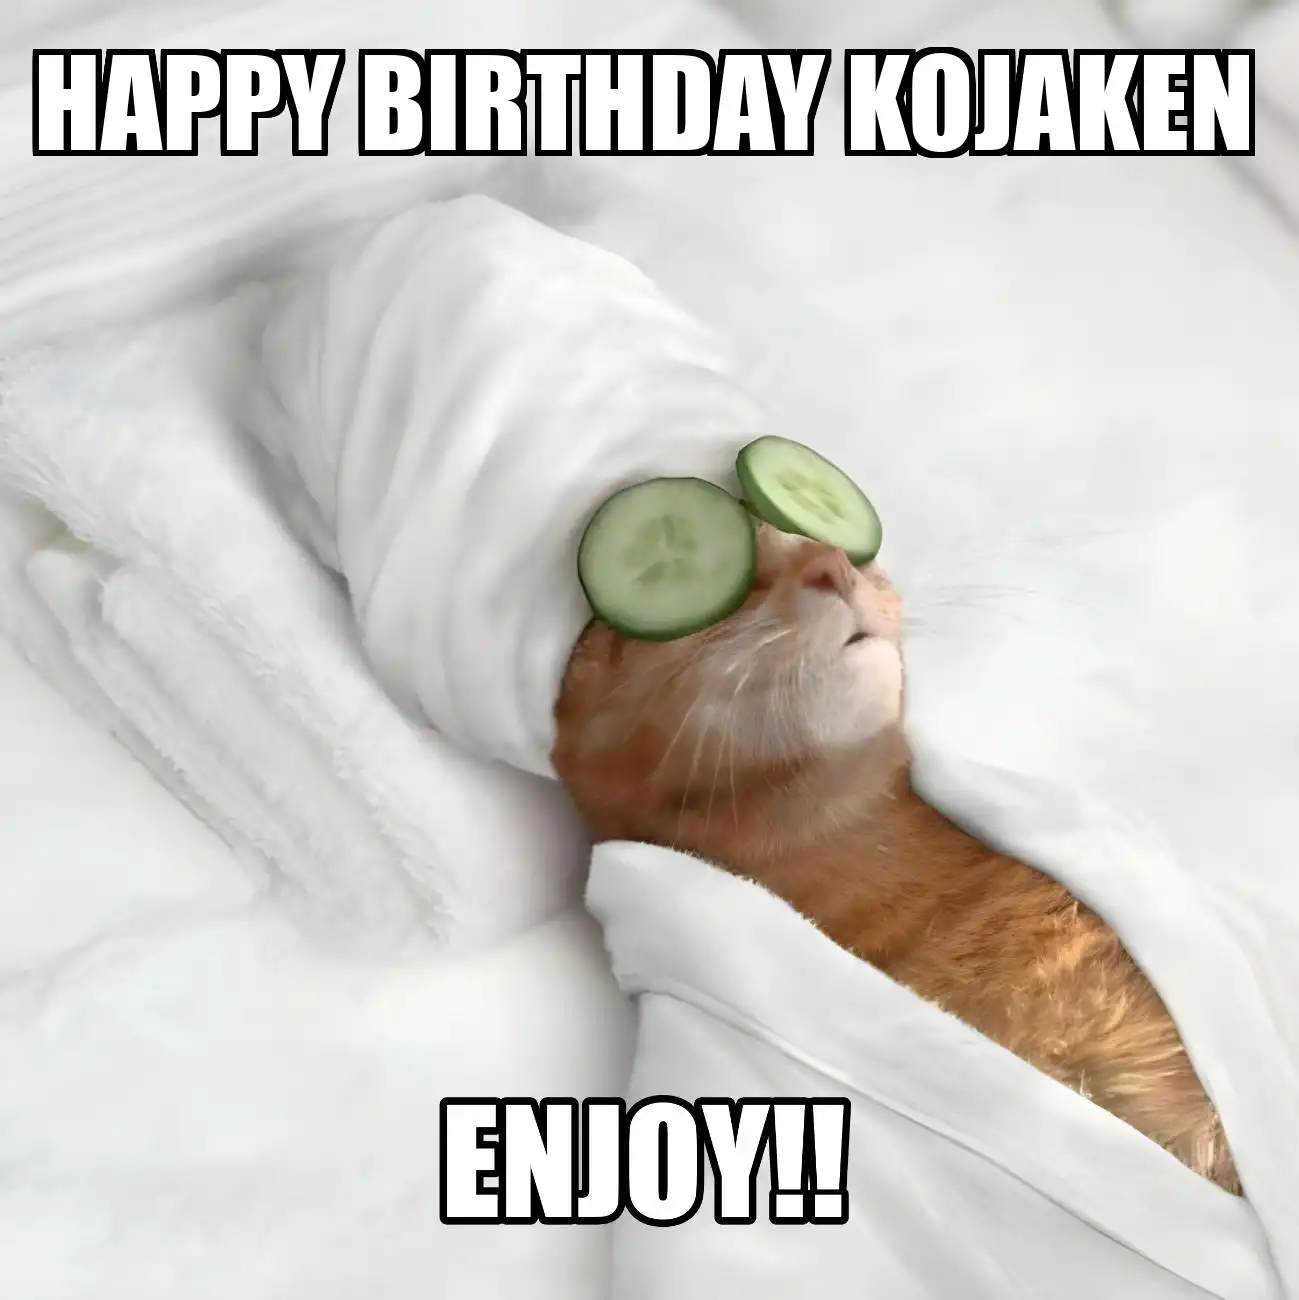 Happy Birthday Kojaken Enjoy Cat Meme